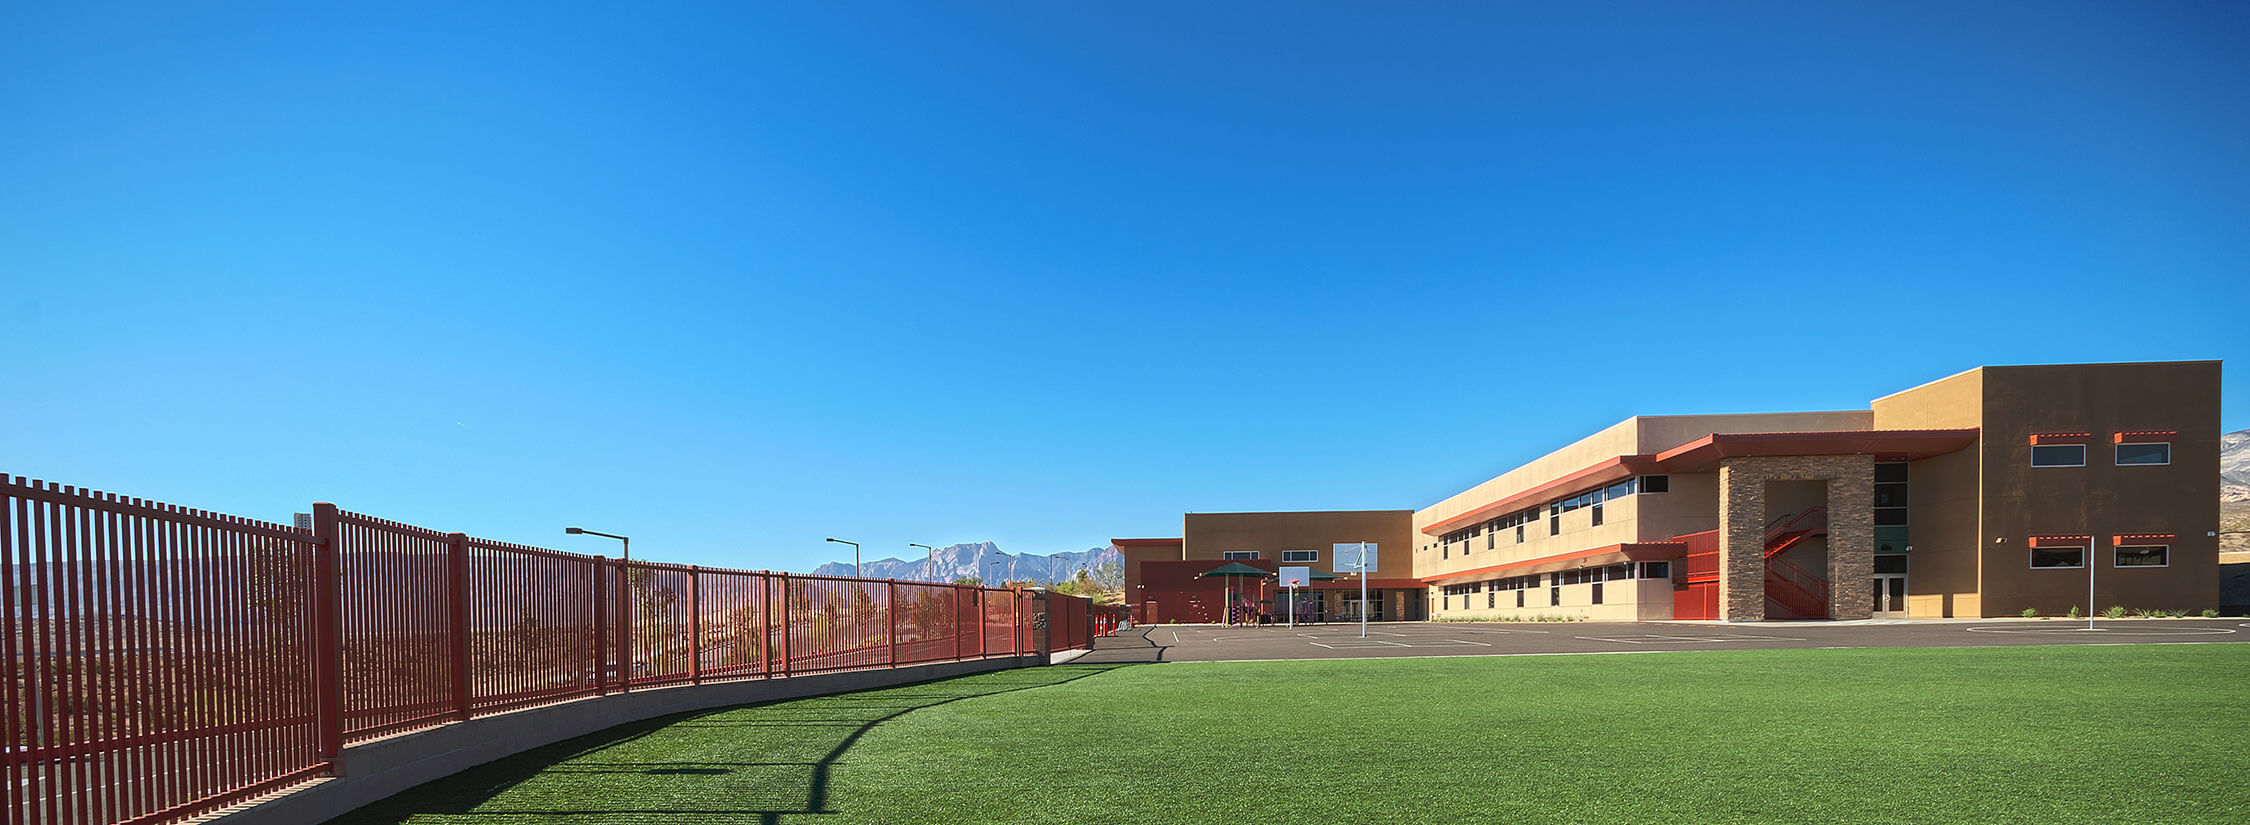 Doral Academy Red Rock Campus K-12 Las Vegas, NV